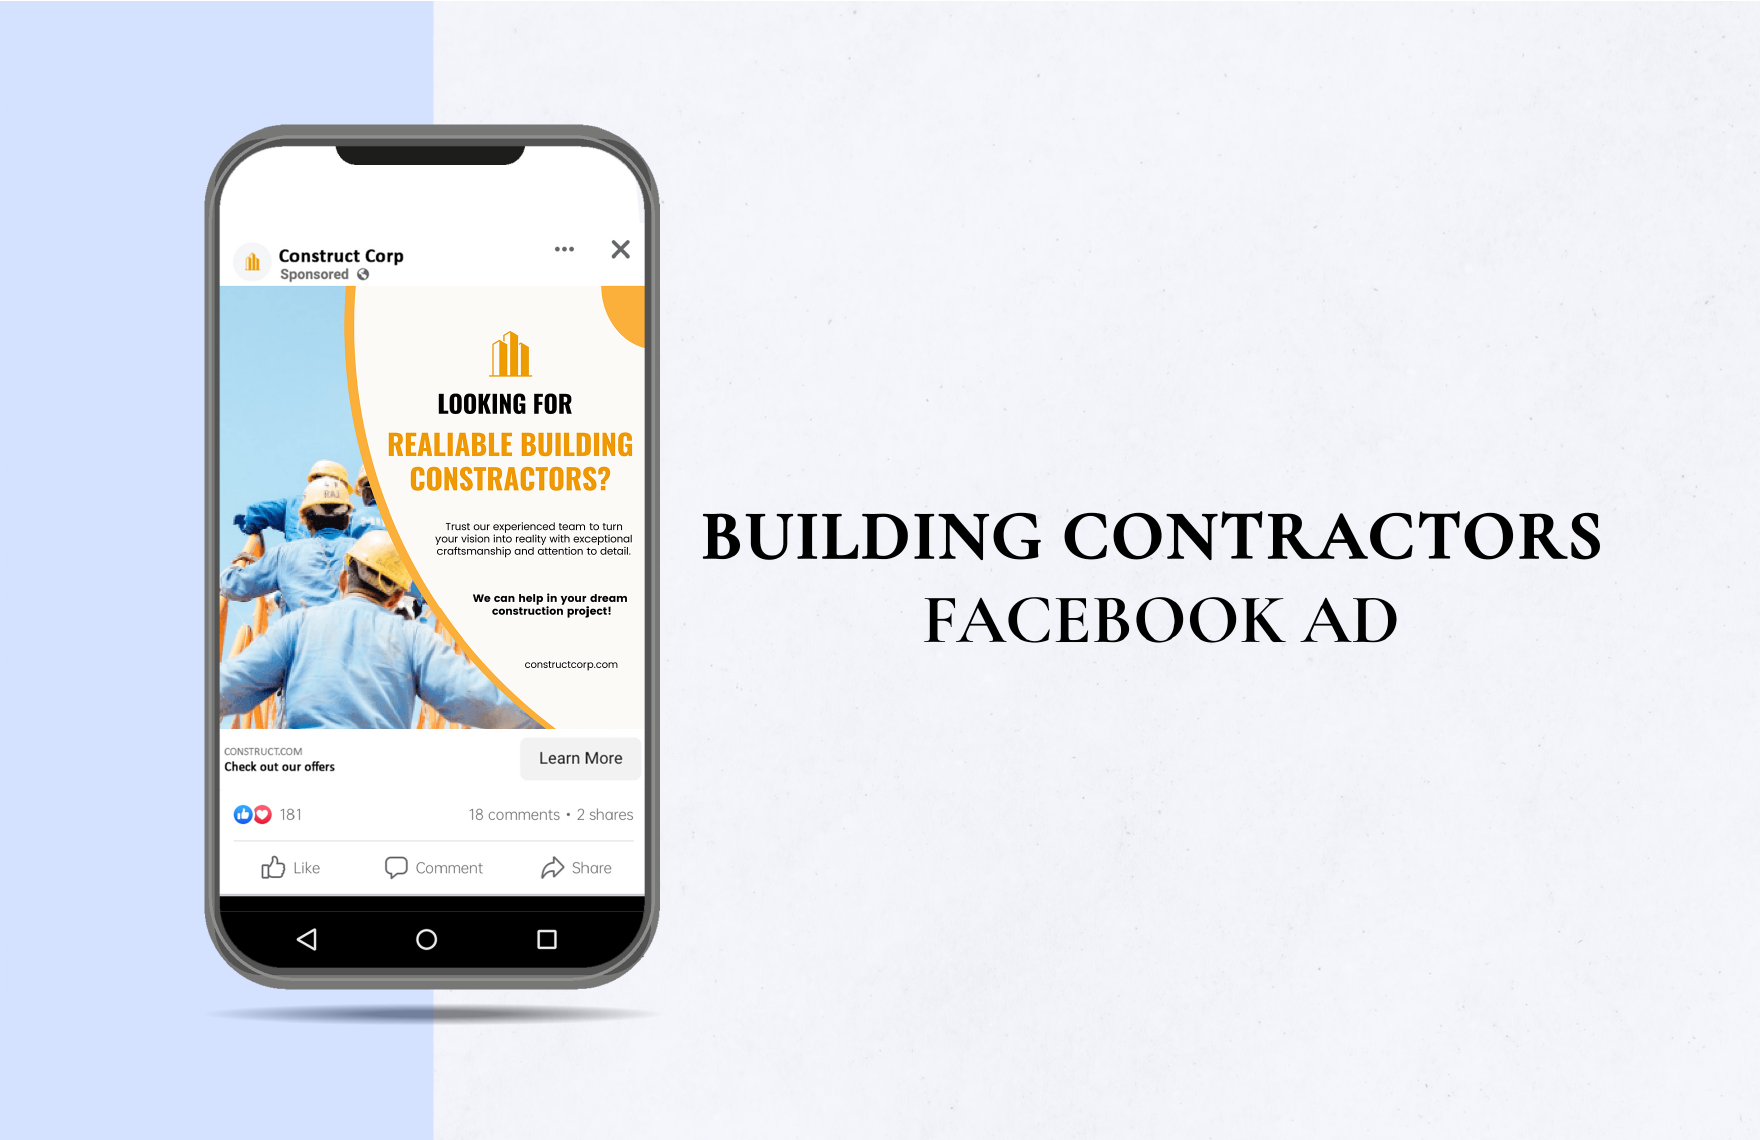 Building Contractors Facebook Ad